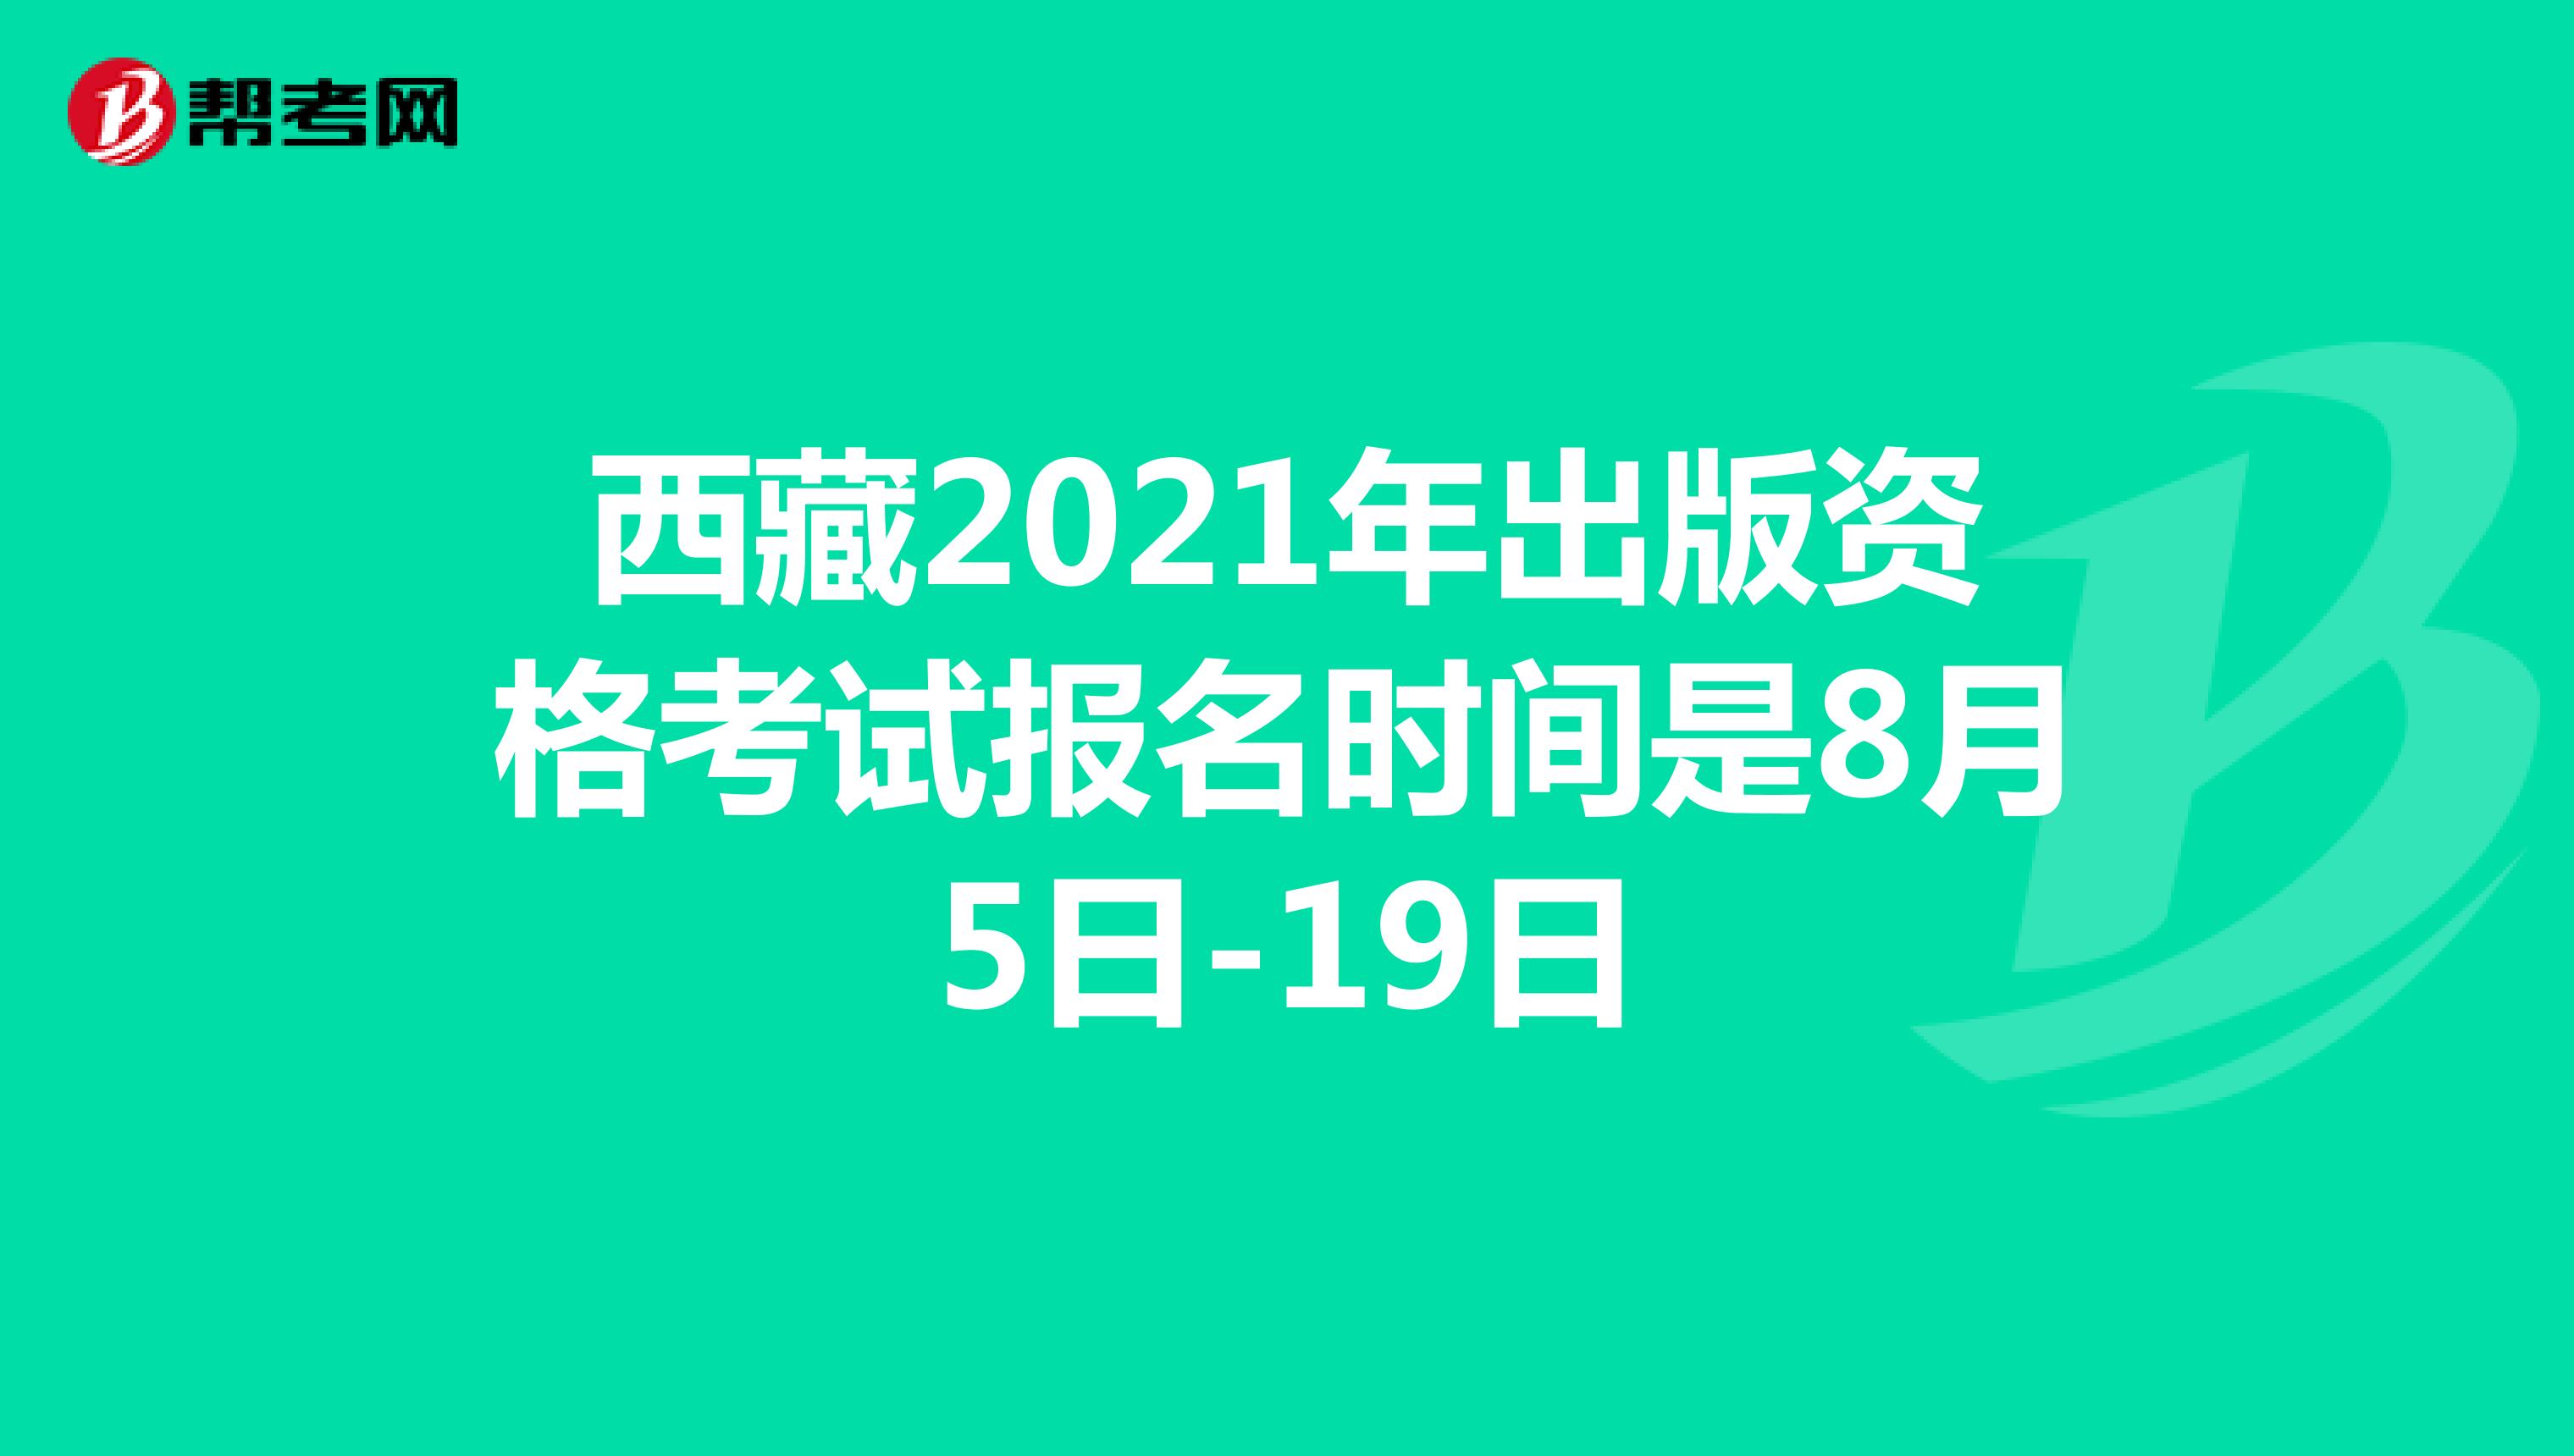 西藏2021年出版资格考试报名时间是8月5日-19日